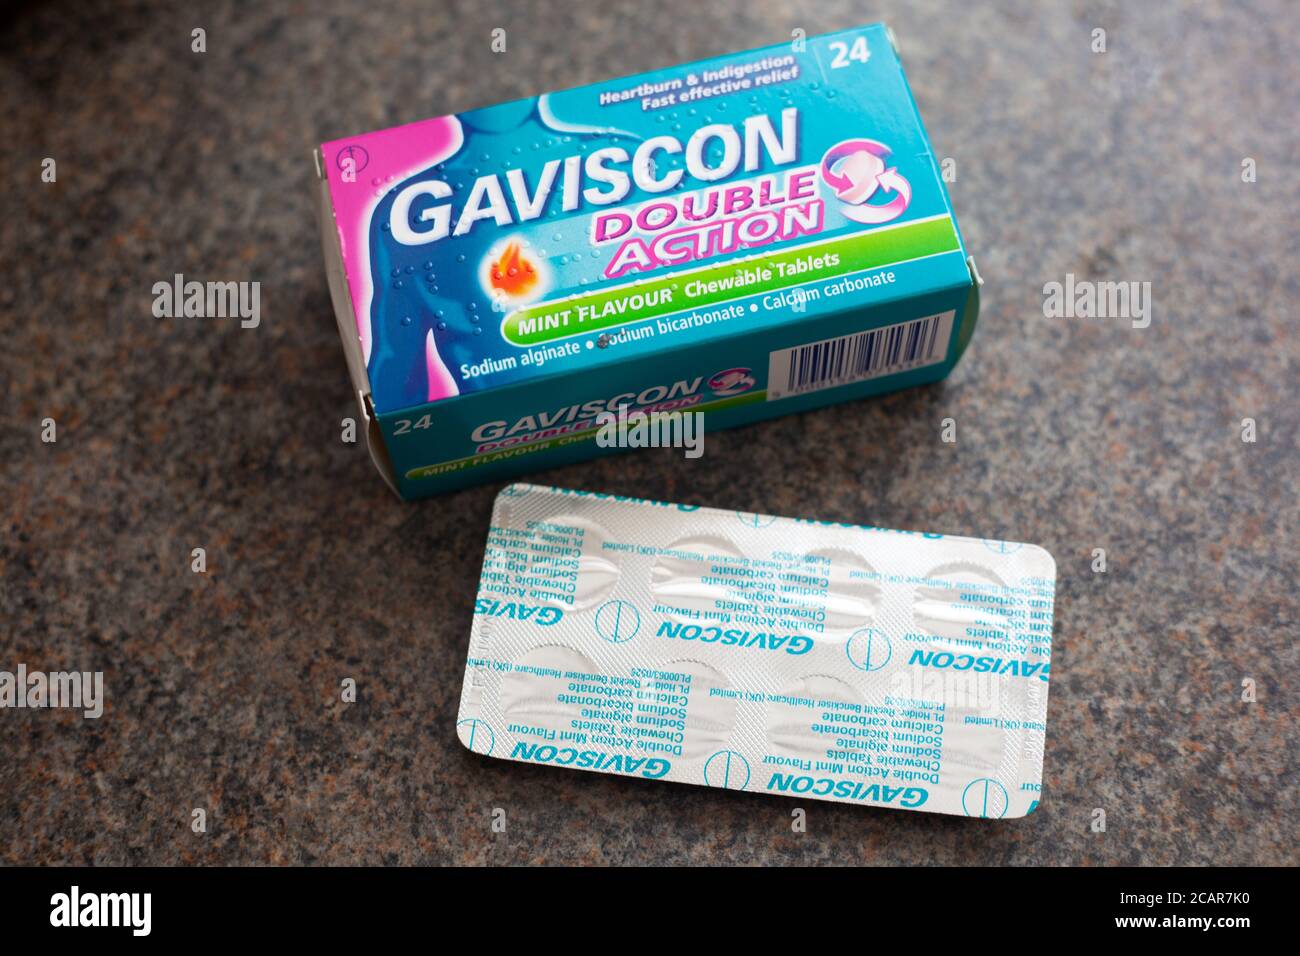 Packet of Gaviscon tablets Stock Photo - Alamy